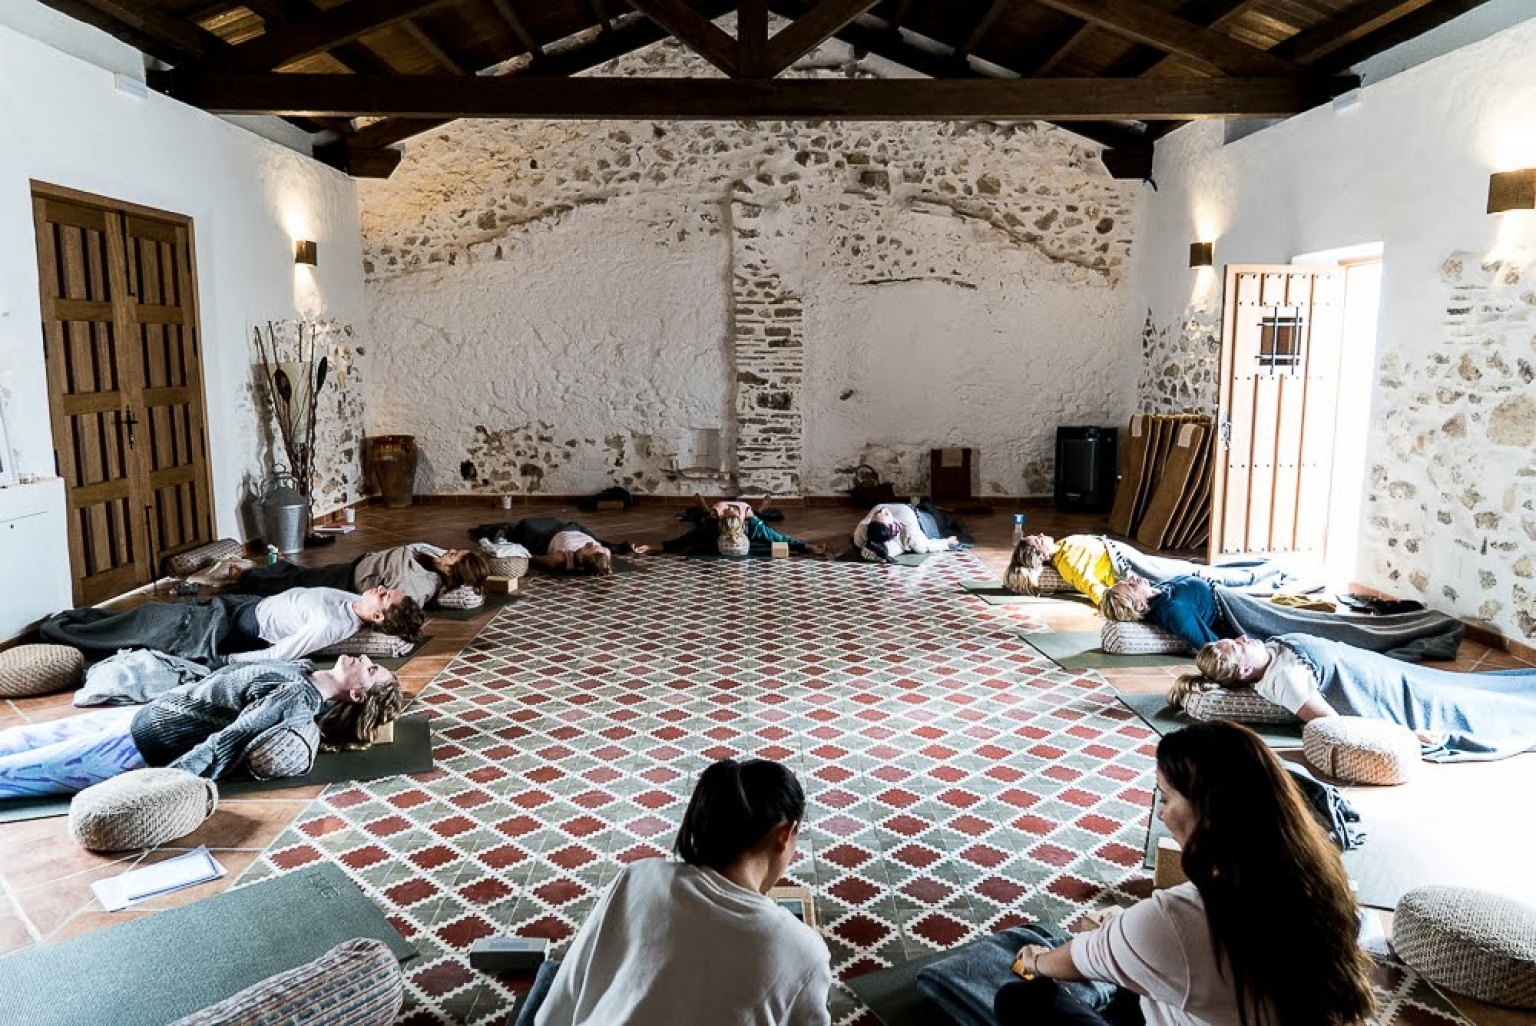 Retiros, Cursos y Formaciones de Yoga para profesores e instructores, en la Sala Tinao del alojamiento turístico rural, Cortijo Las Monjas